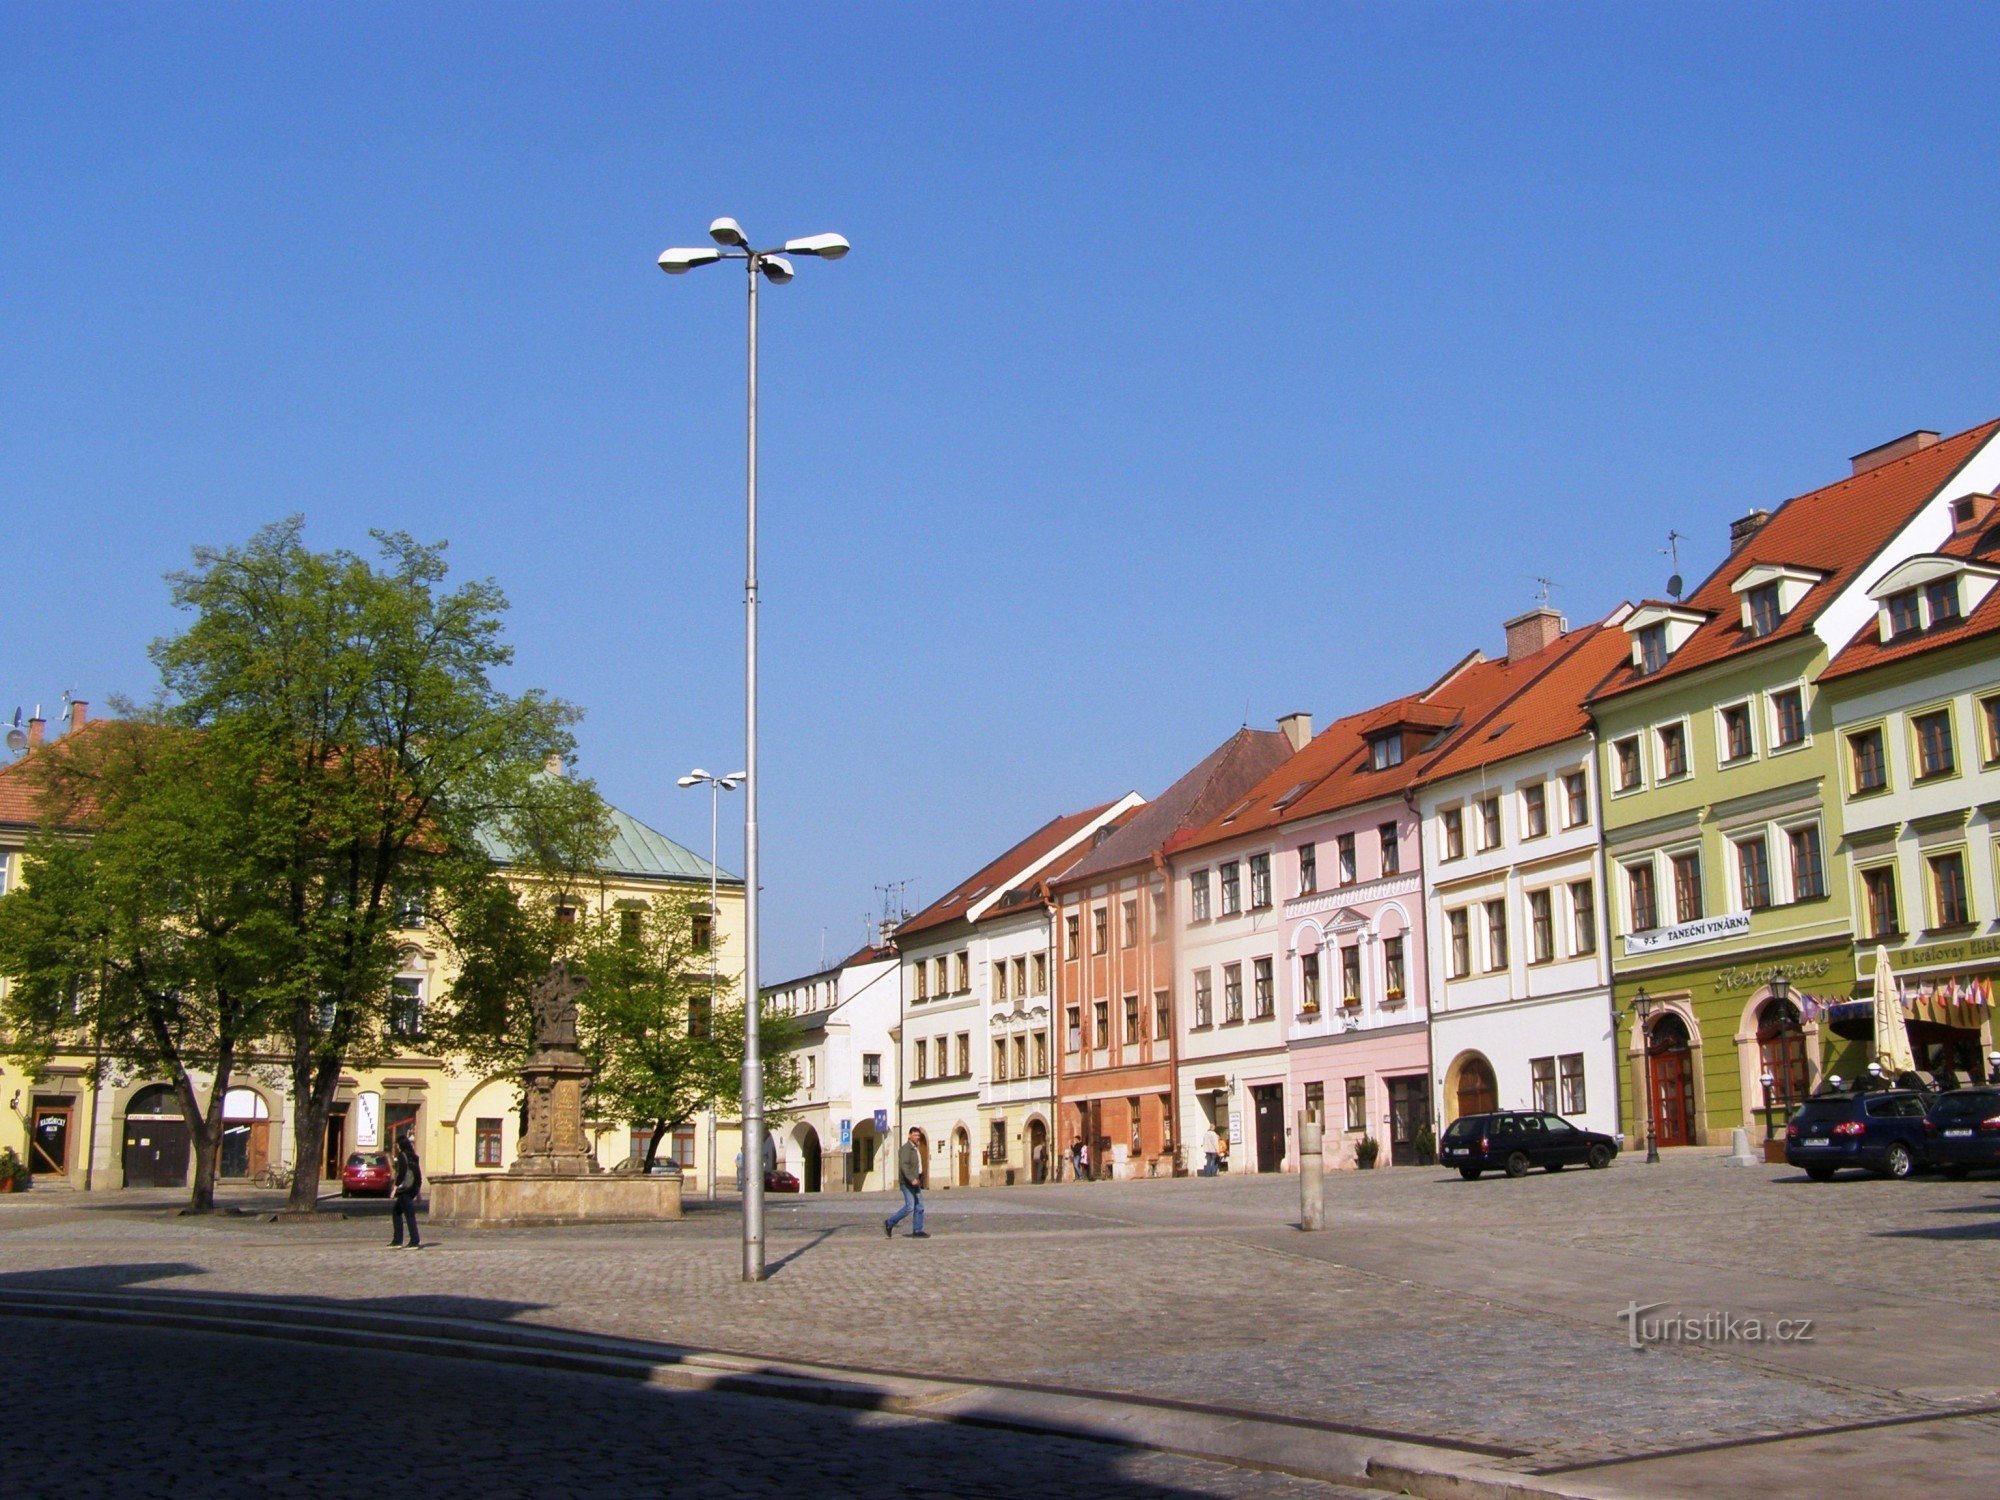 Hradec Králové - Small Square